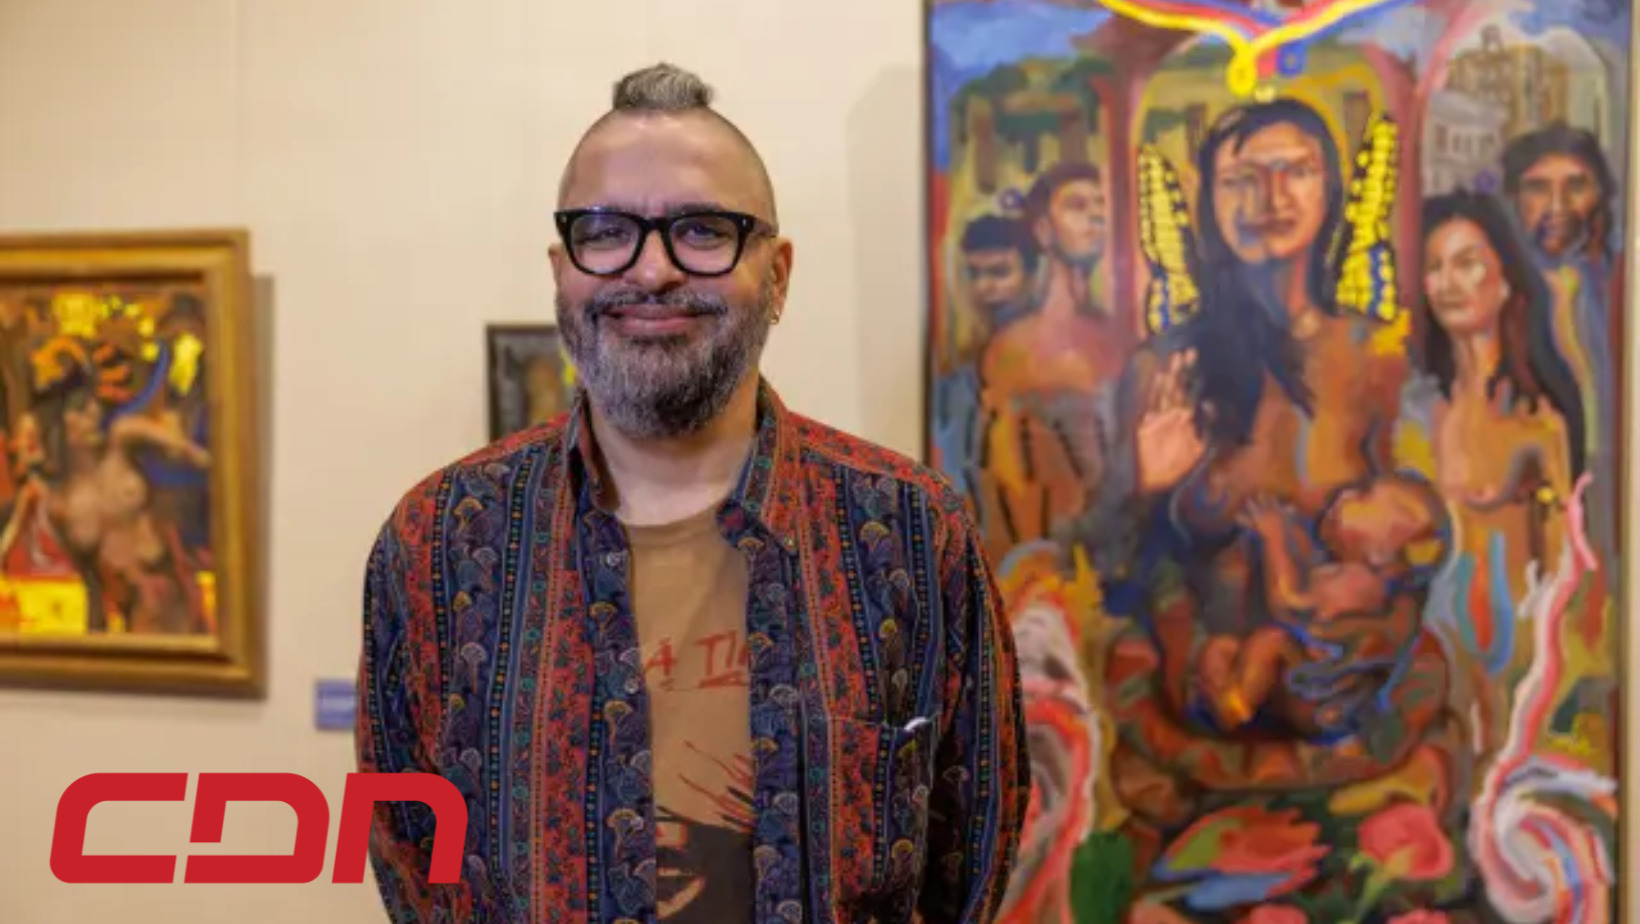 El artista dominicano Chiqui Mendoza, posando junto a una de sus obras. Foto: CDN Digital